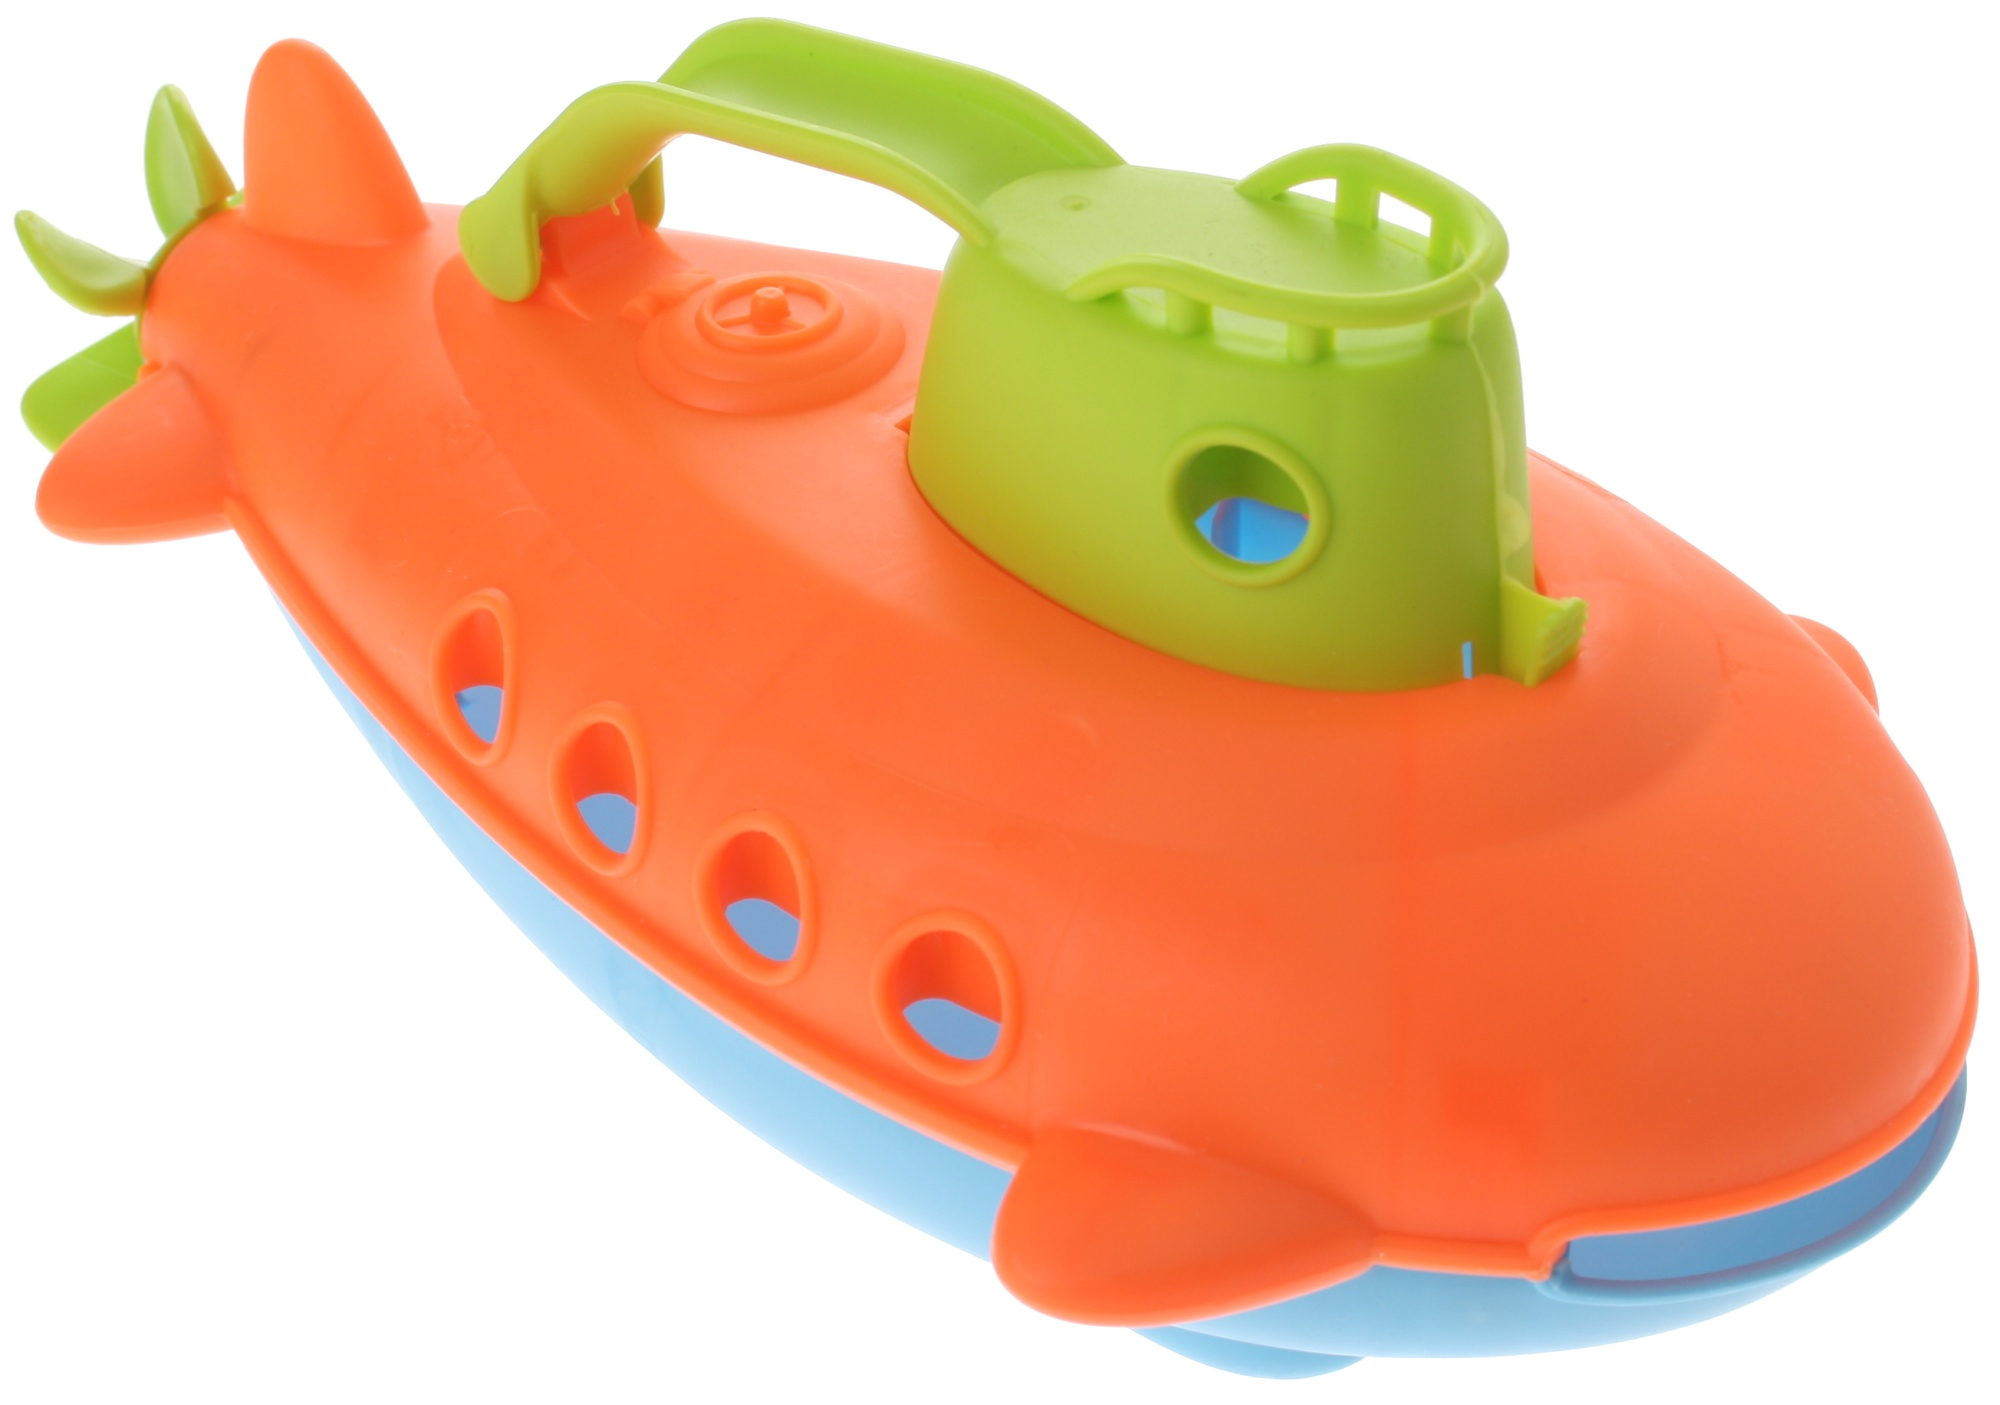 eddy toys bath toy submarine orange 26cm